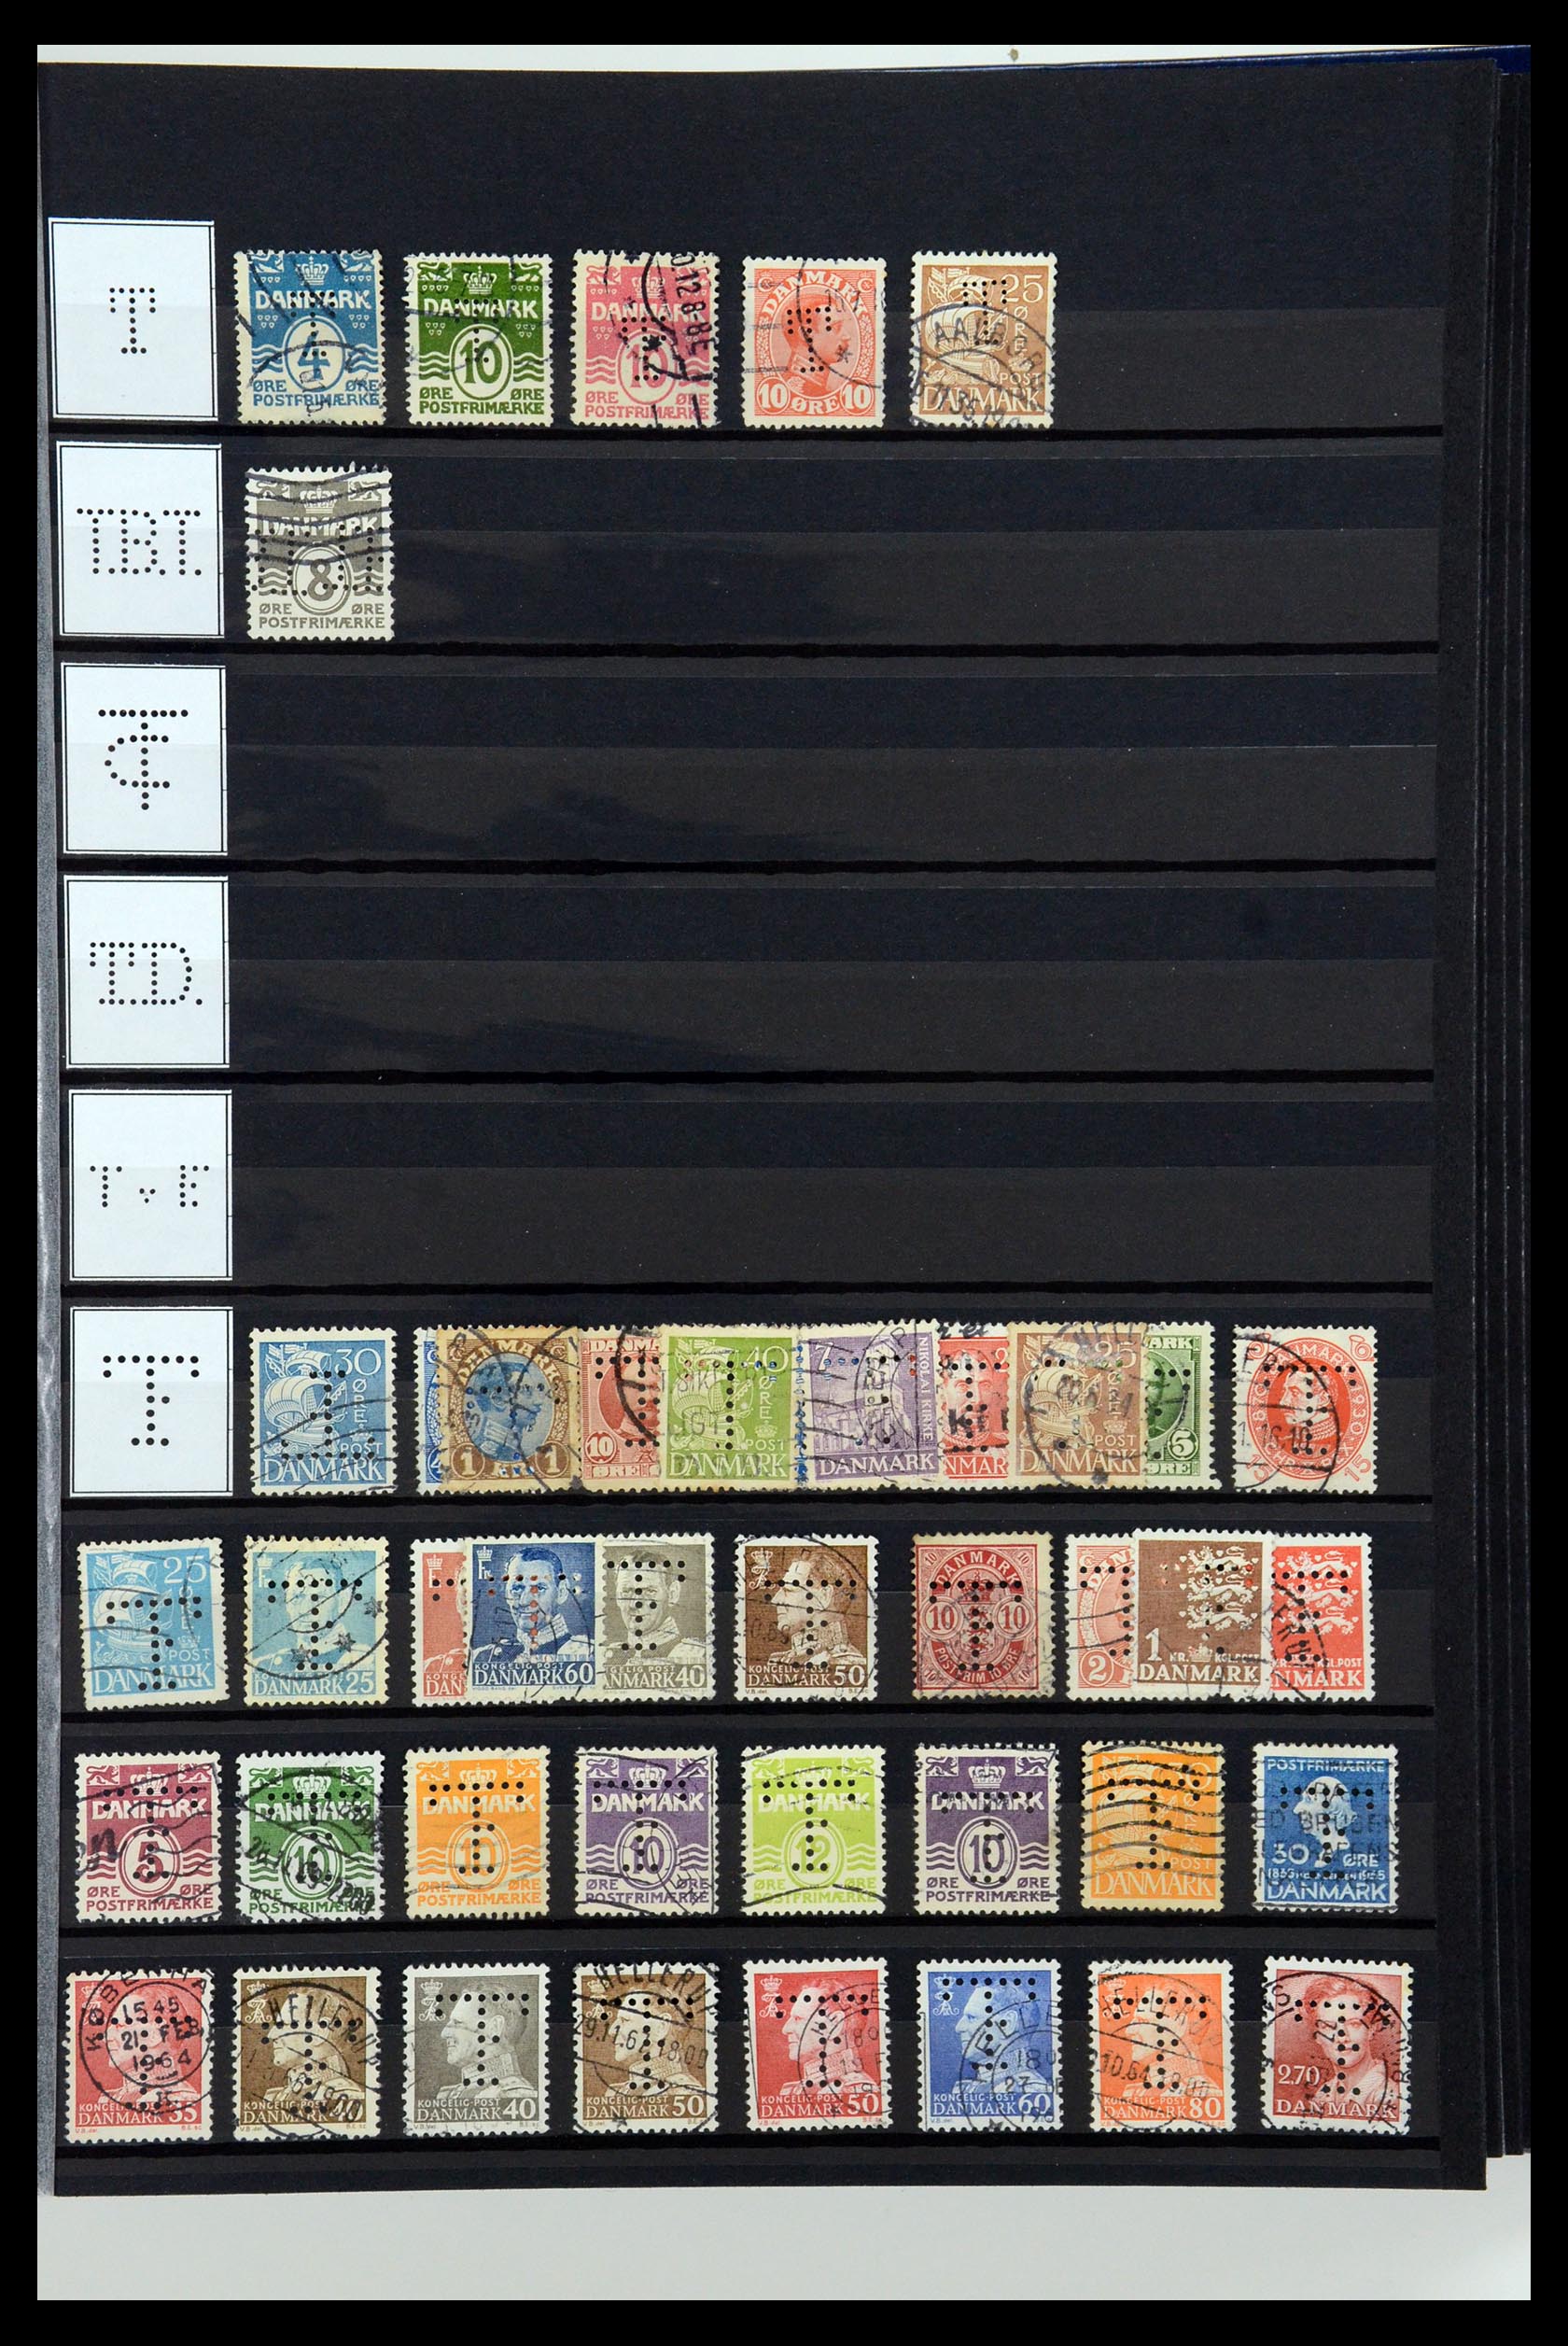 36396 213 - Postzegelverzameling 36396 Denemarken perfins.